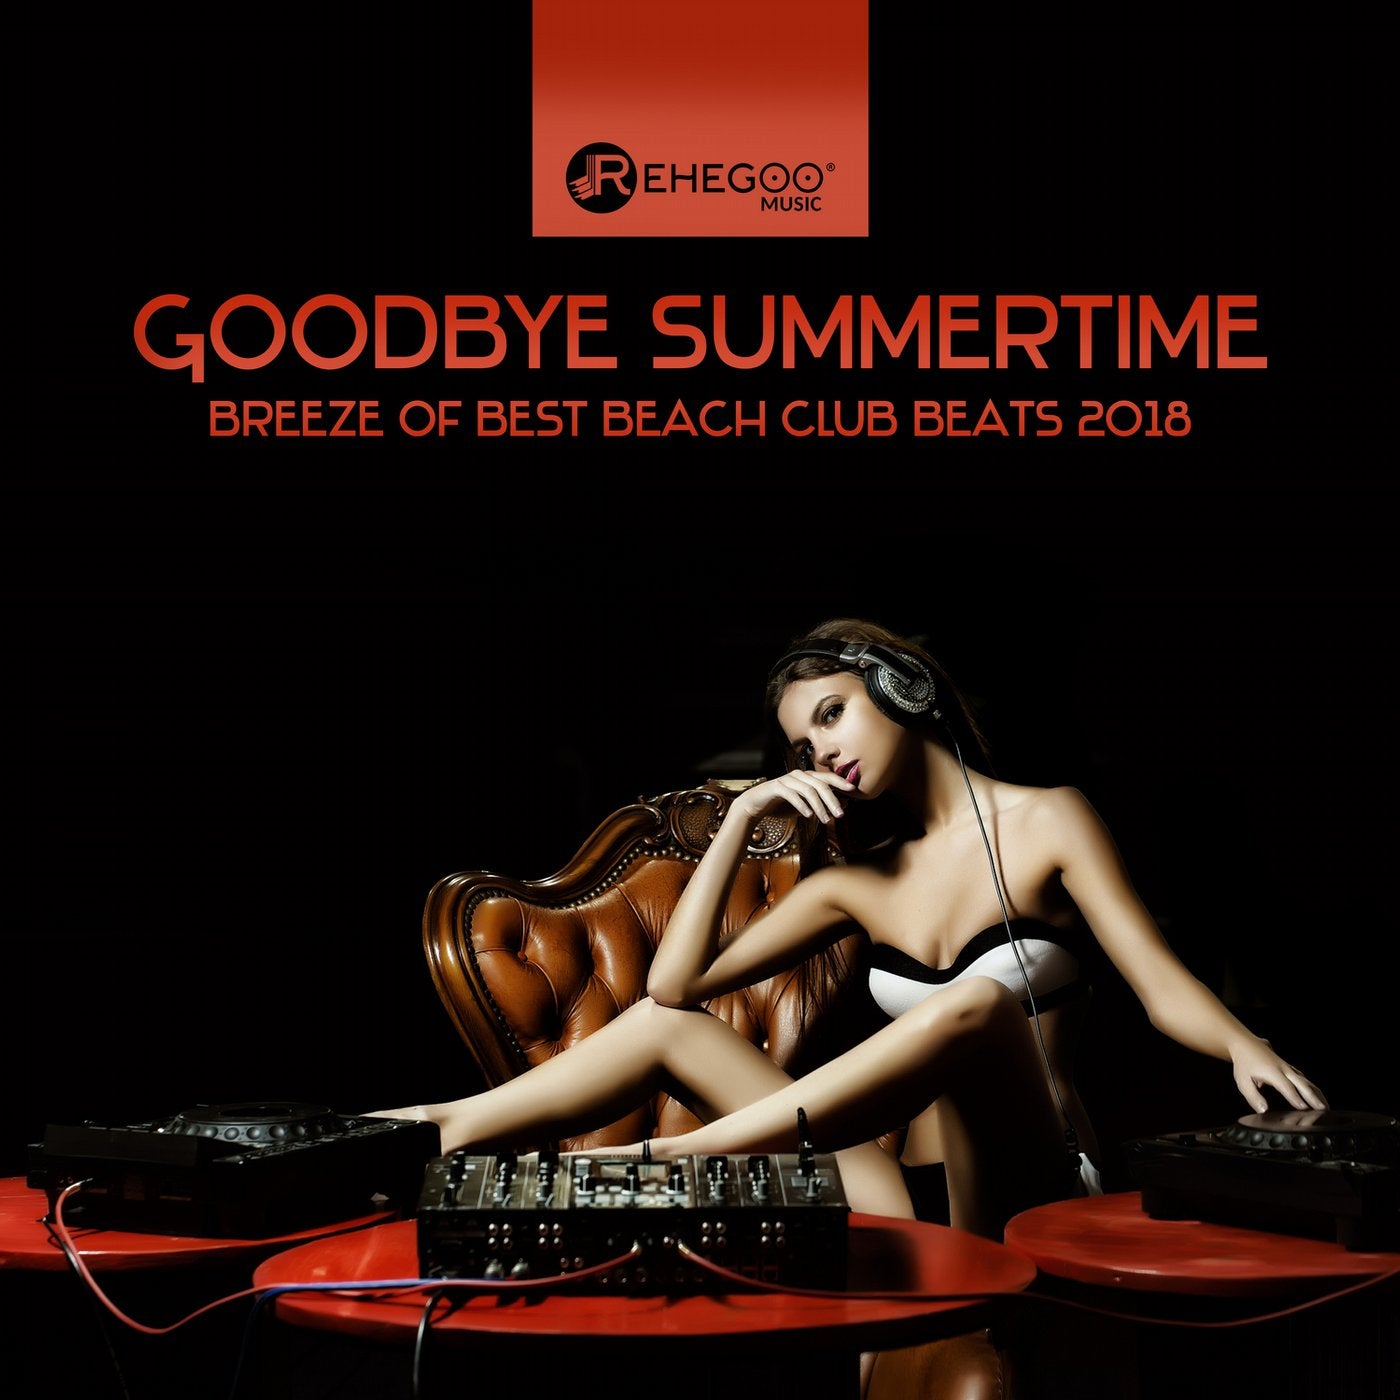 Goodbye Summertime: Breeze of Best Beach Club Beats 2018